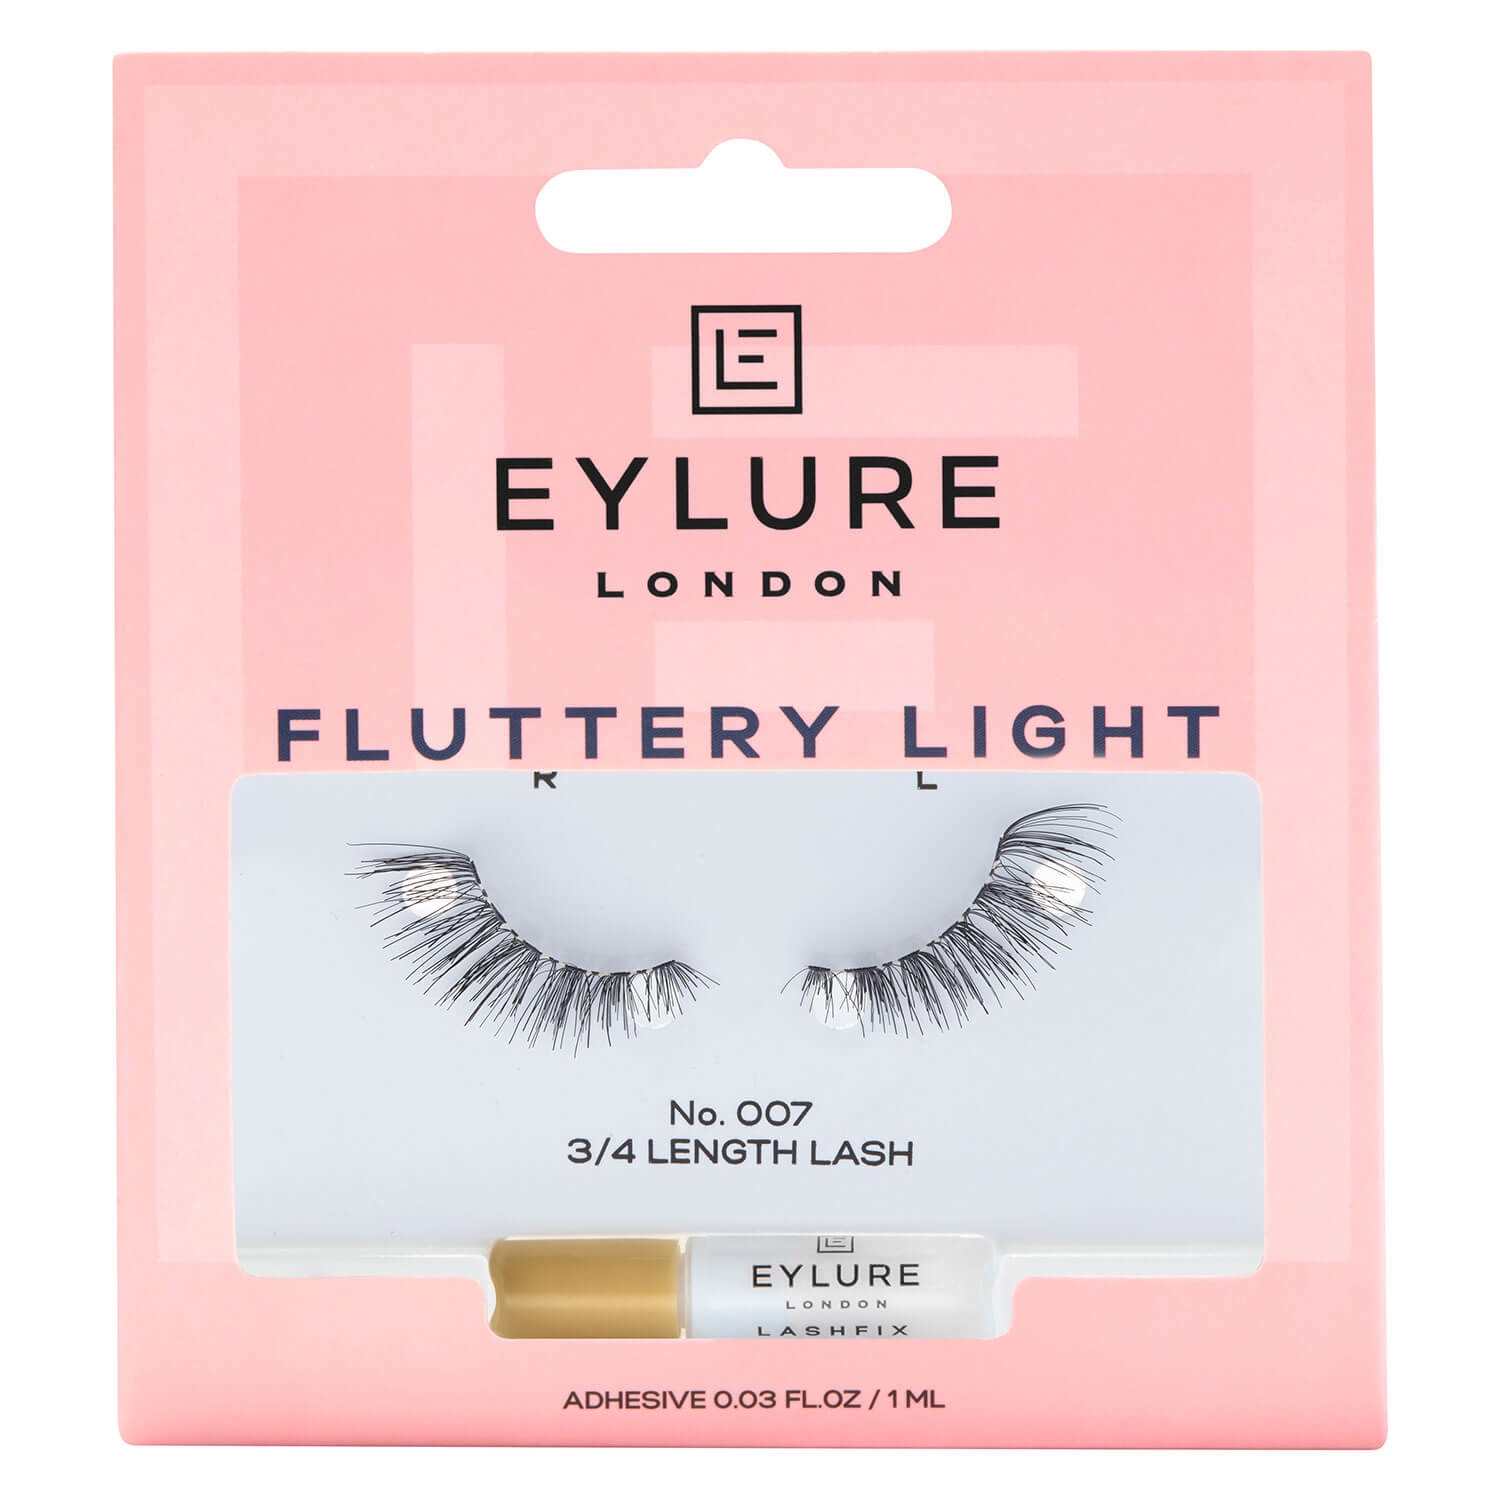 Produktbild von EYLURE - Wimpern Fluttery Light 007